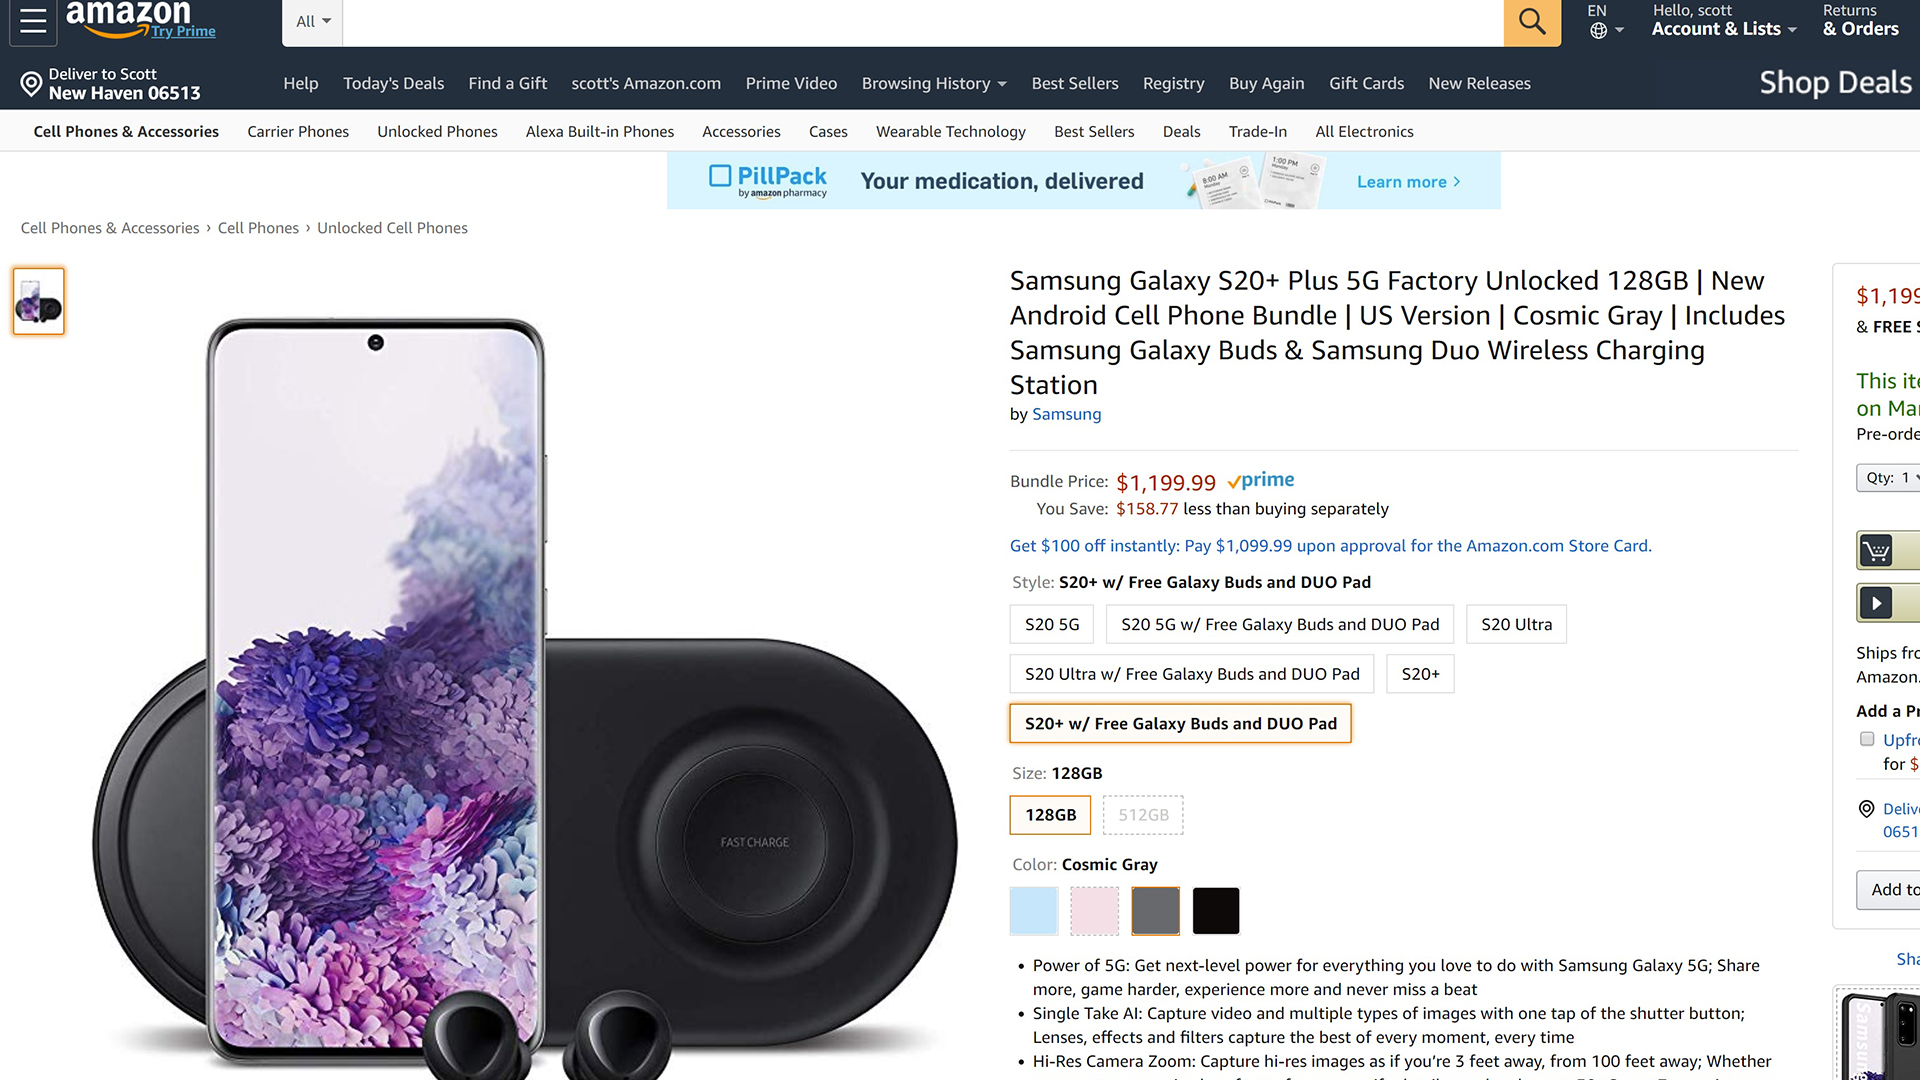 Samsung Galaxy S20 Amazon Pre Order Page